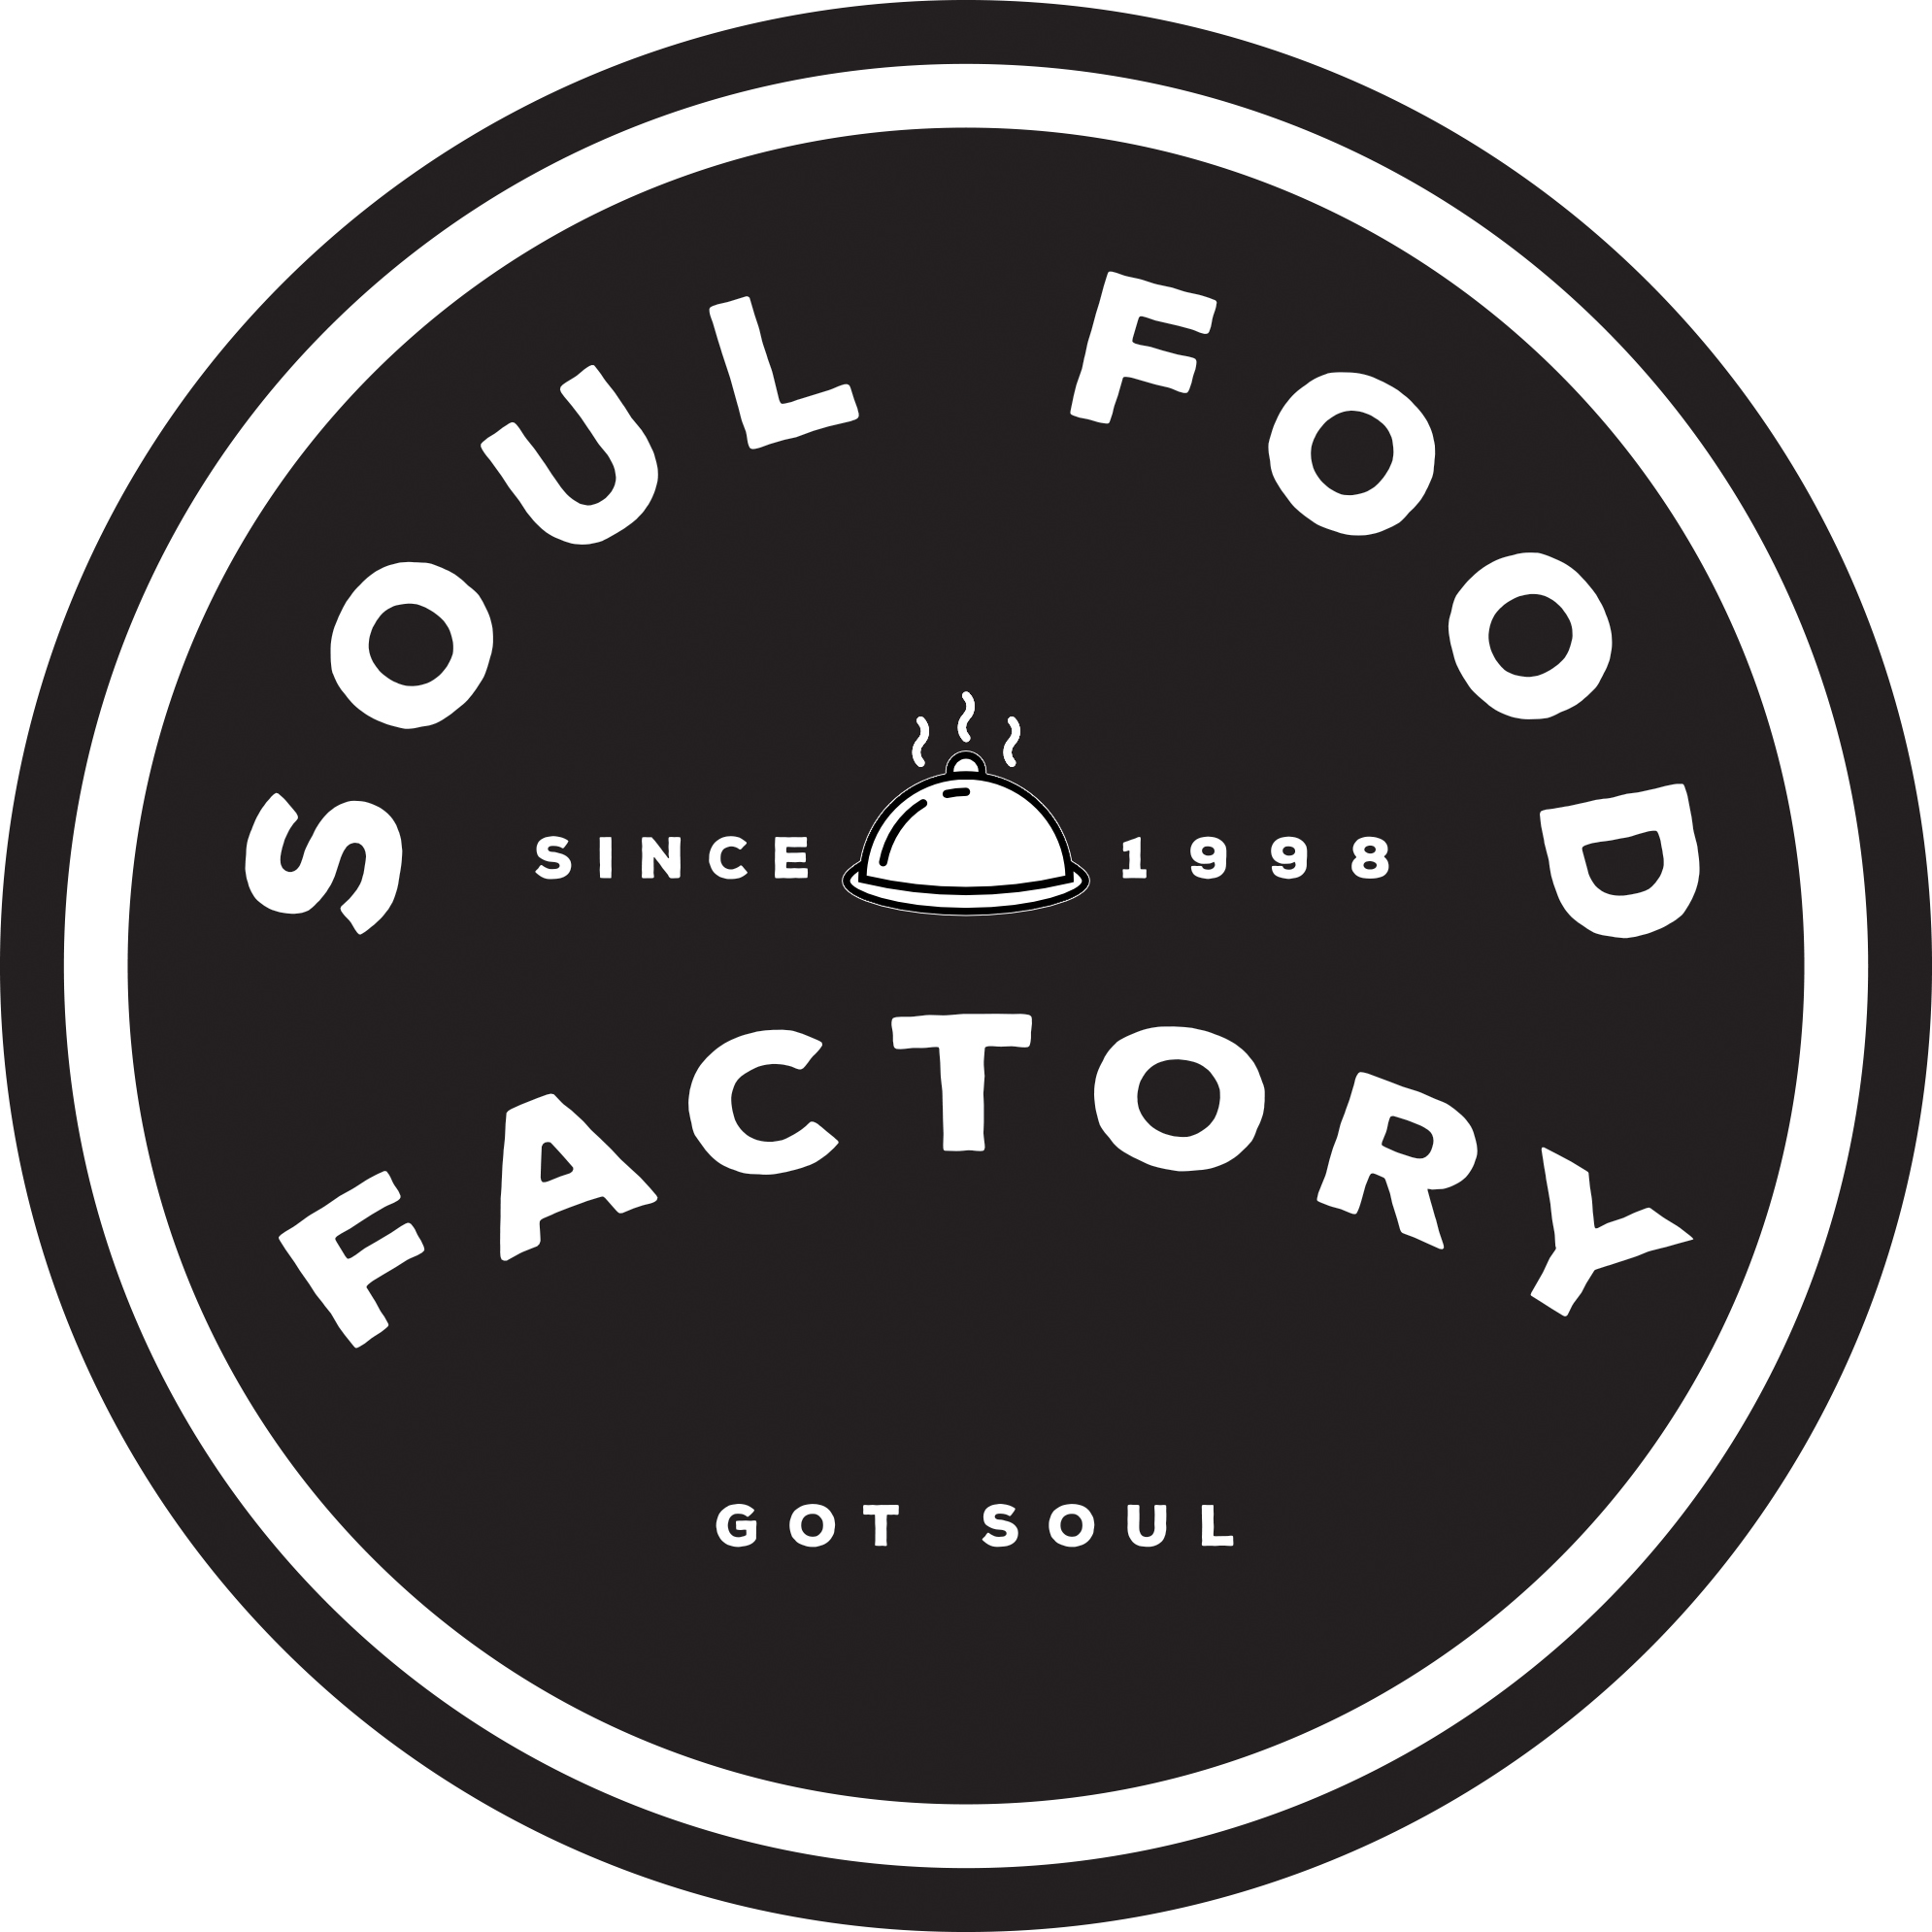 The Soul Food Factory LLC